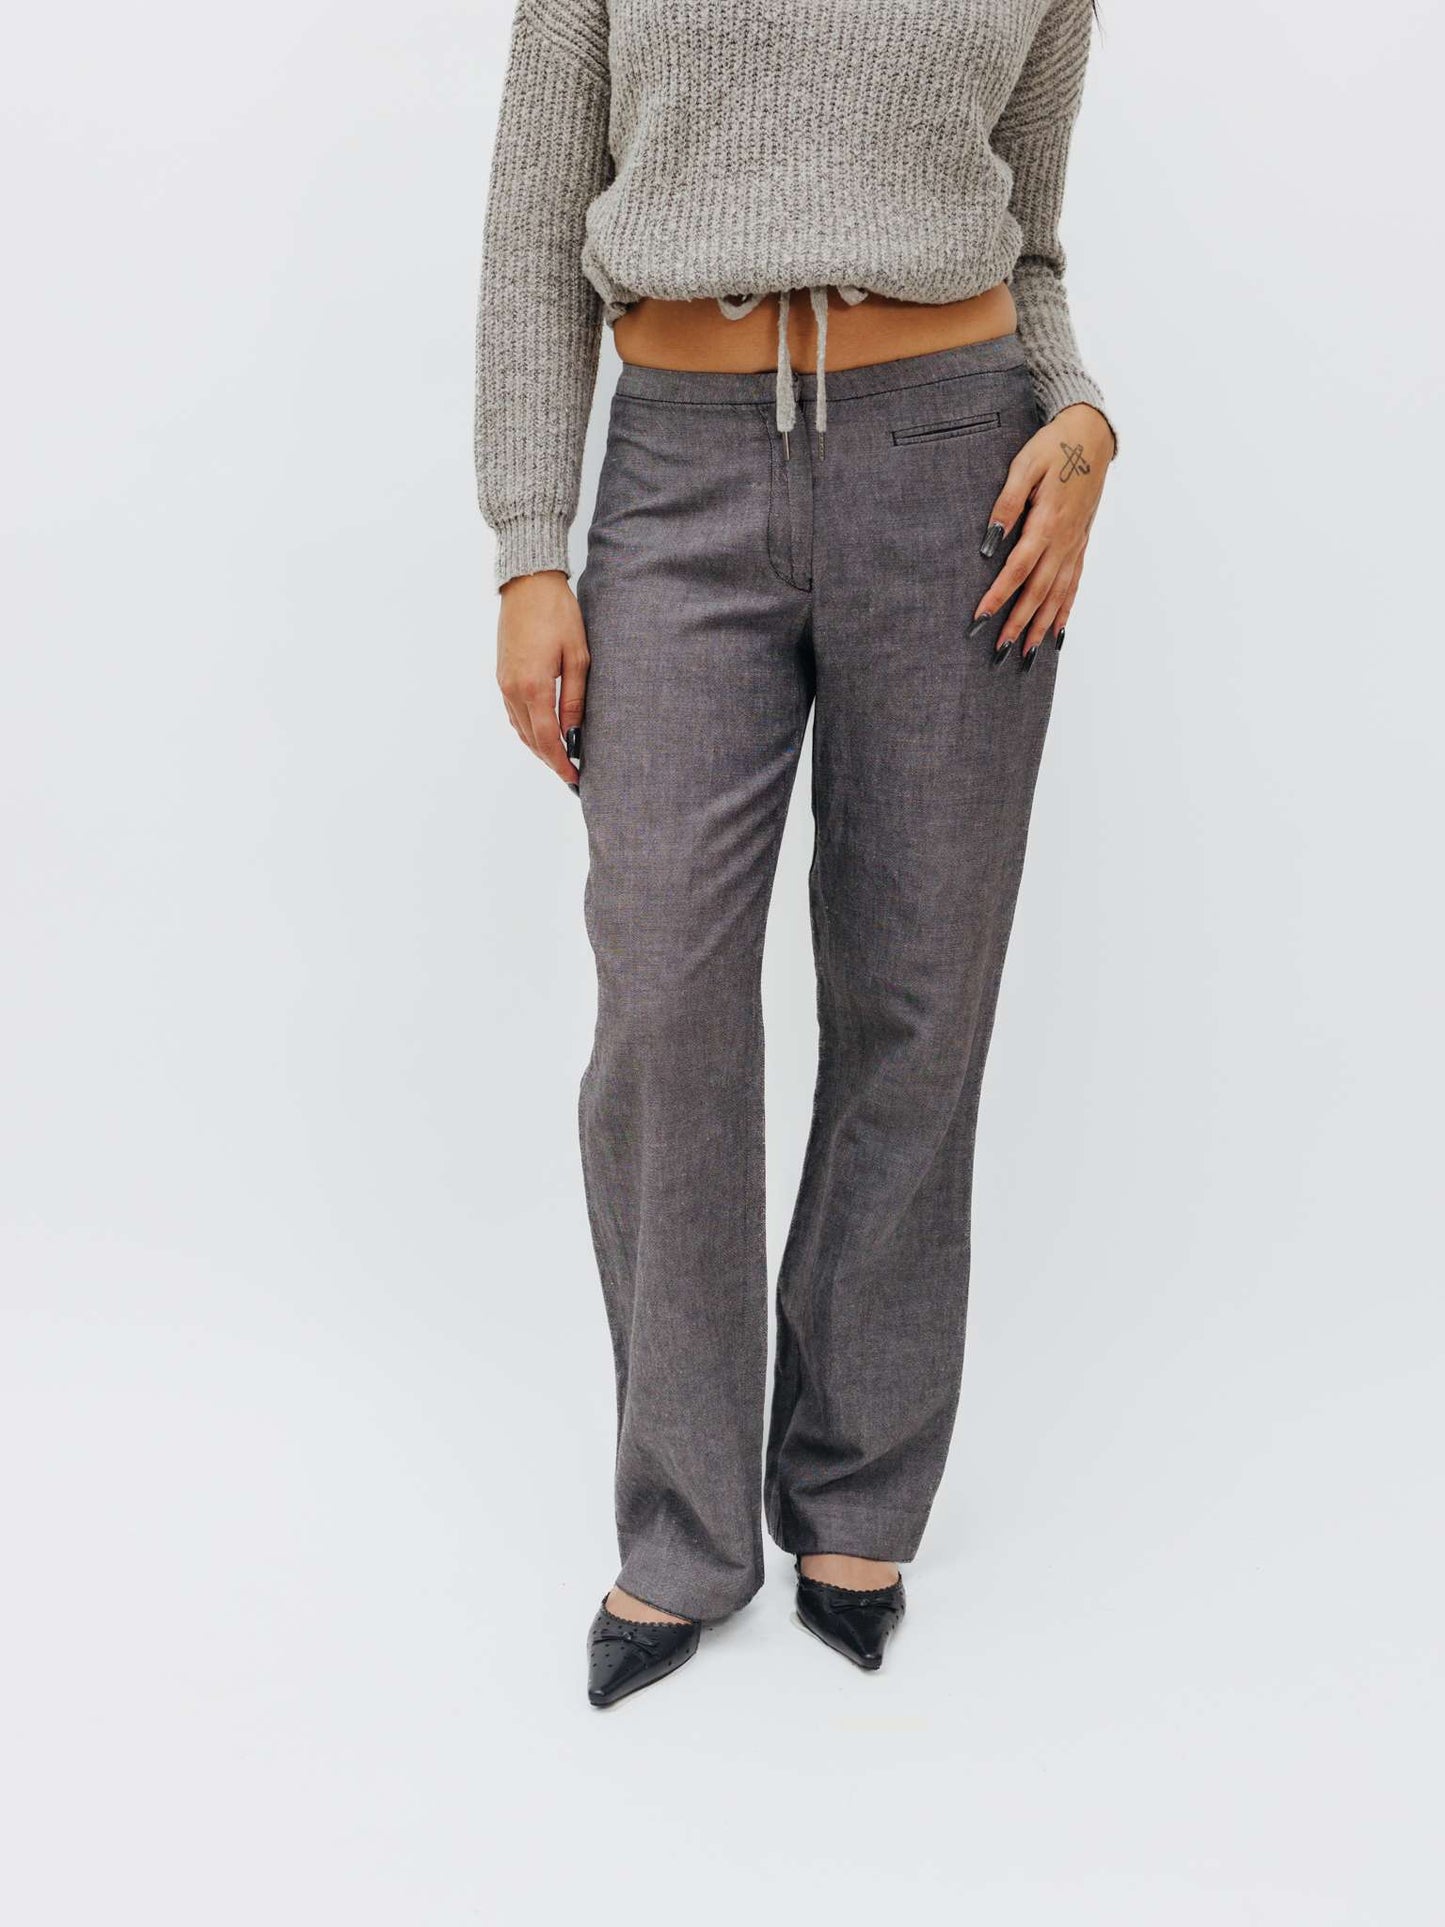 Vintage 90s Minimalism Low Rise Linen Pants